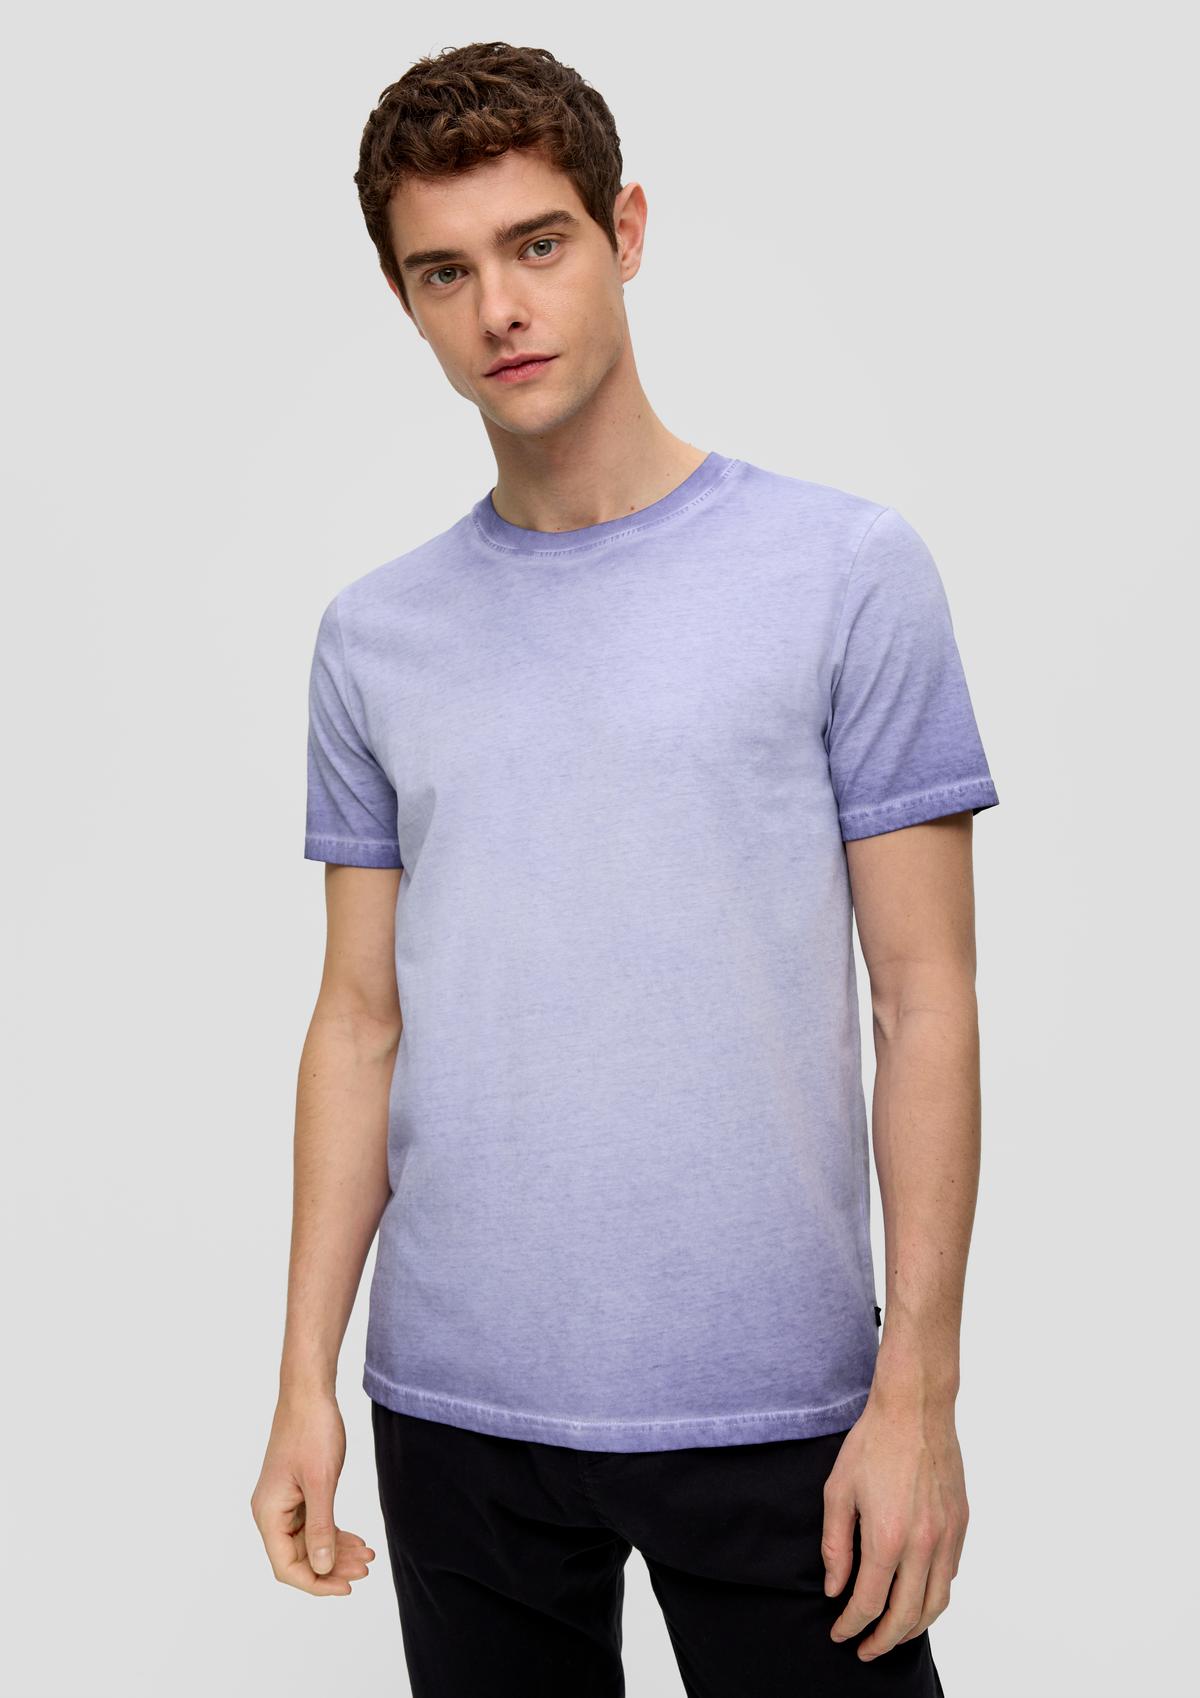 Bavlněné tričko barvené po ušití